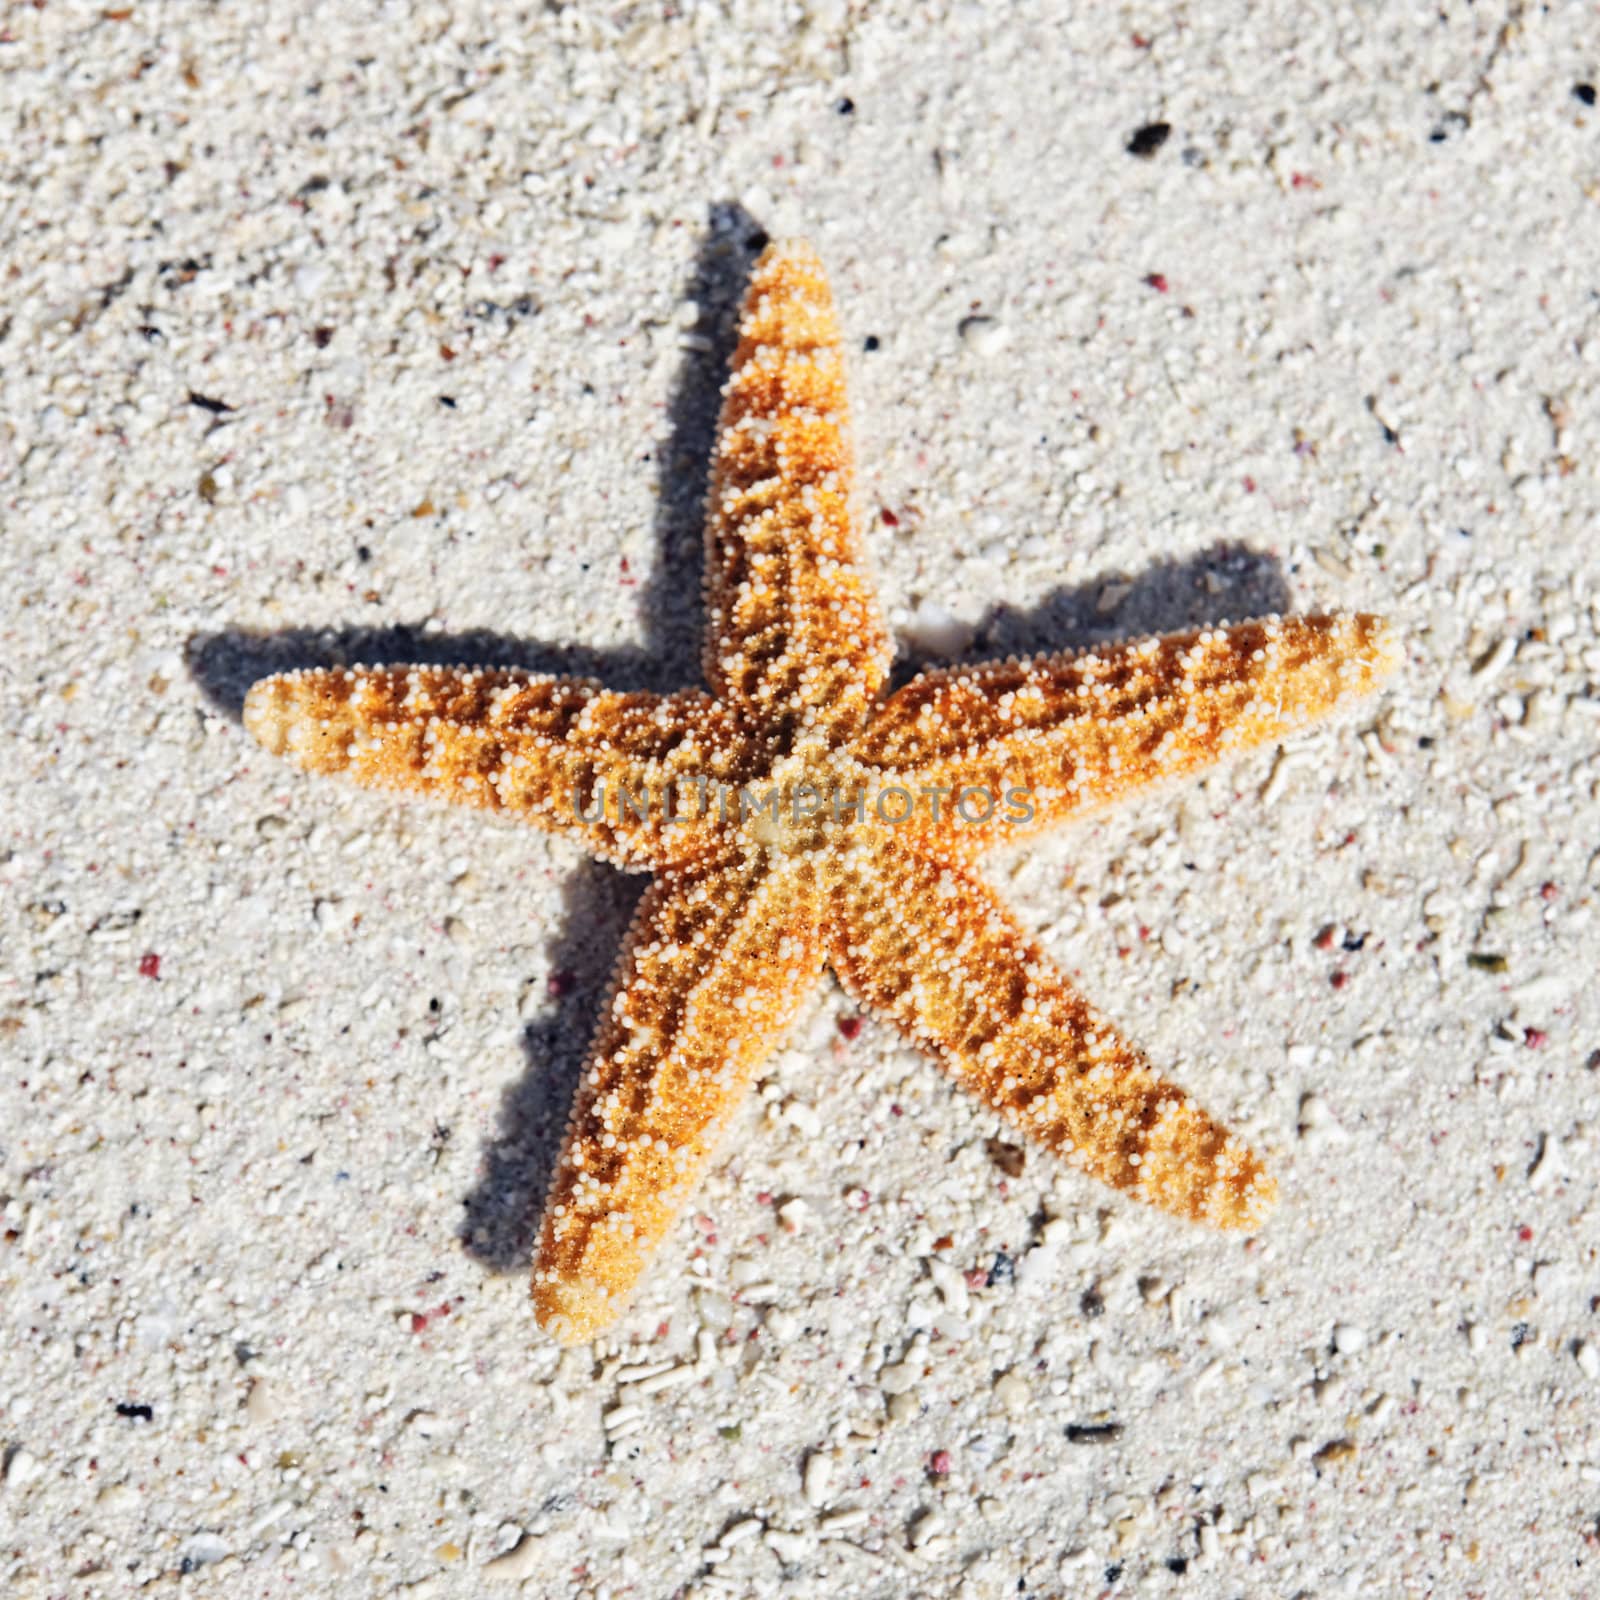 orange seastar on sand on a caribbean beach